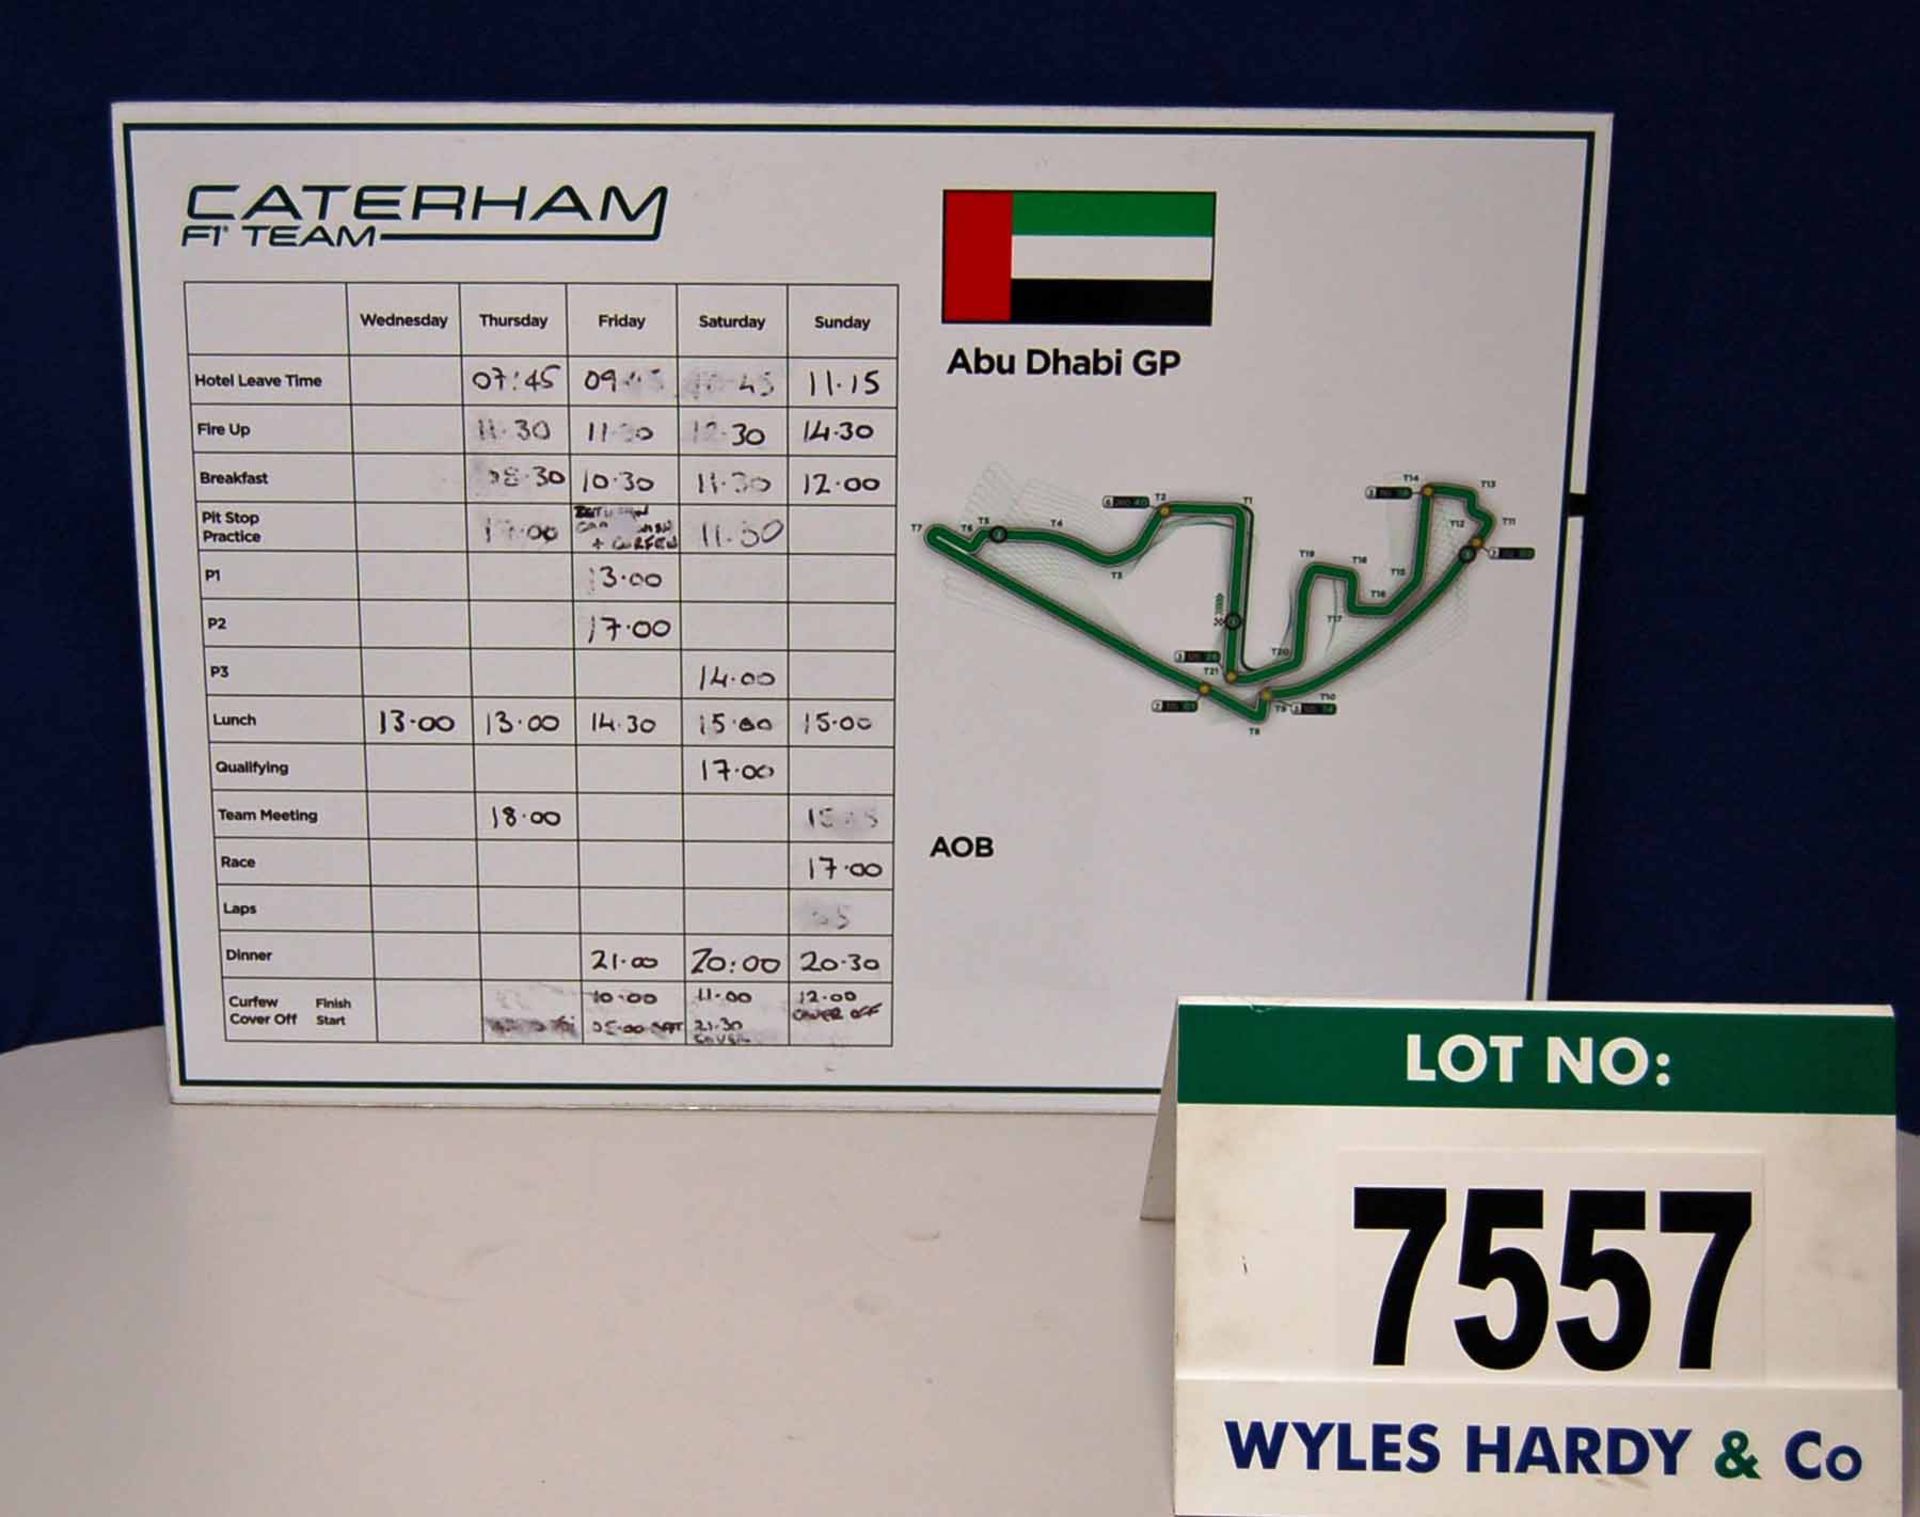 A CATERHAM F1 Team 500mm x 700mm Foamex Pit Crew Information Board - Abu Dhabi Grand Prix  Want it